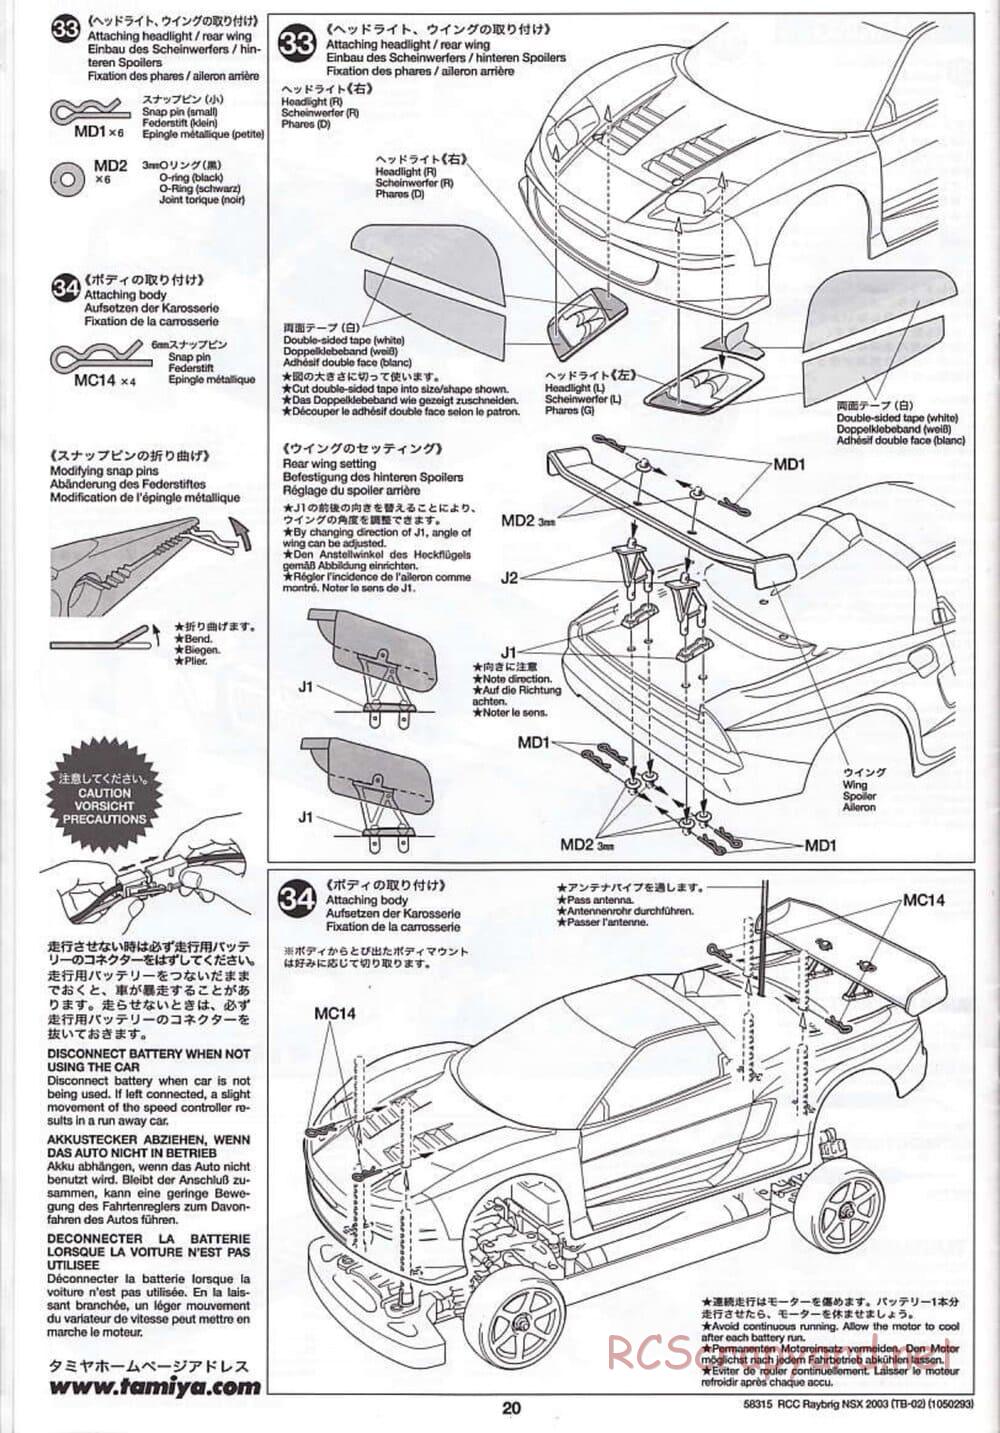 Tamiya - Raybrig NSX 2003 - TB-02 Chassis - Manual - Page 20